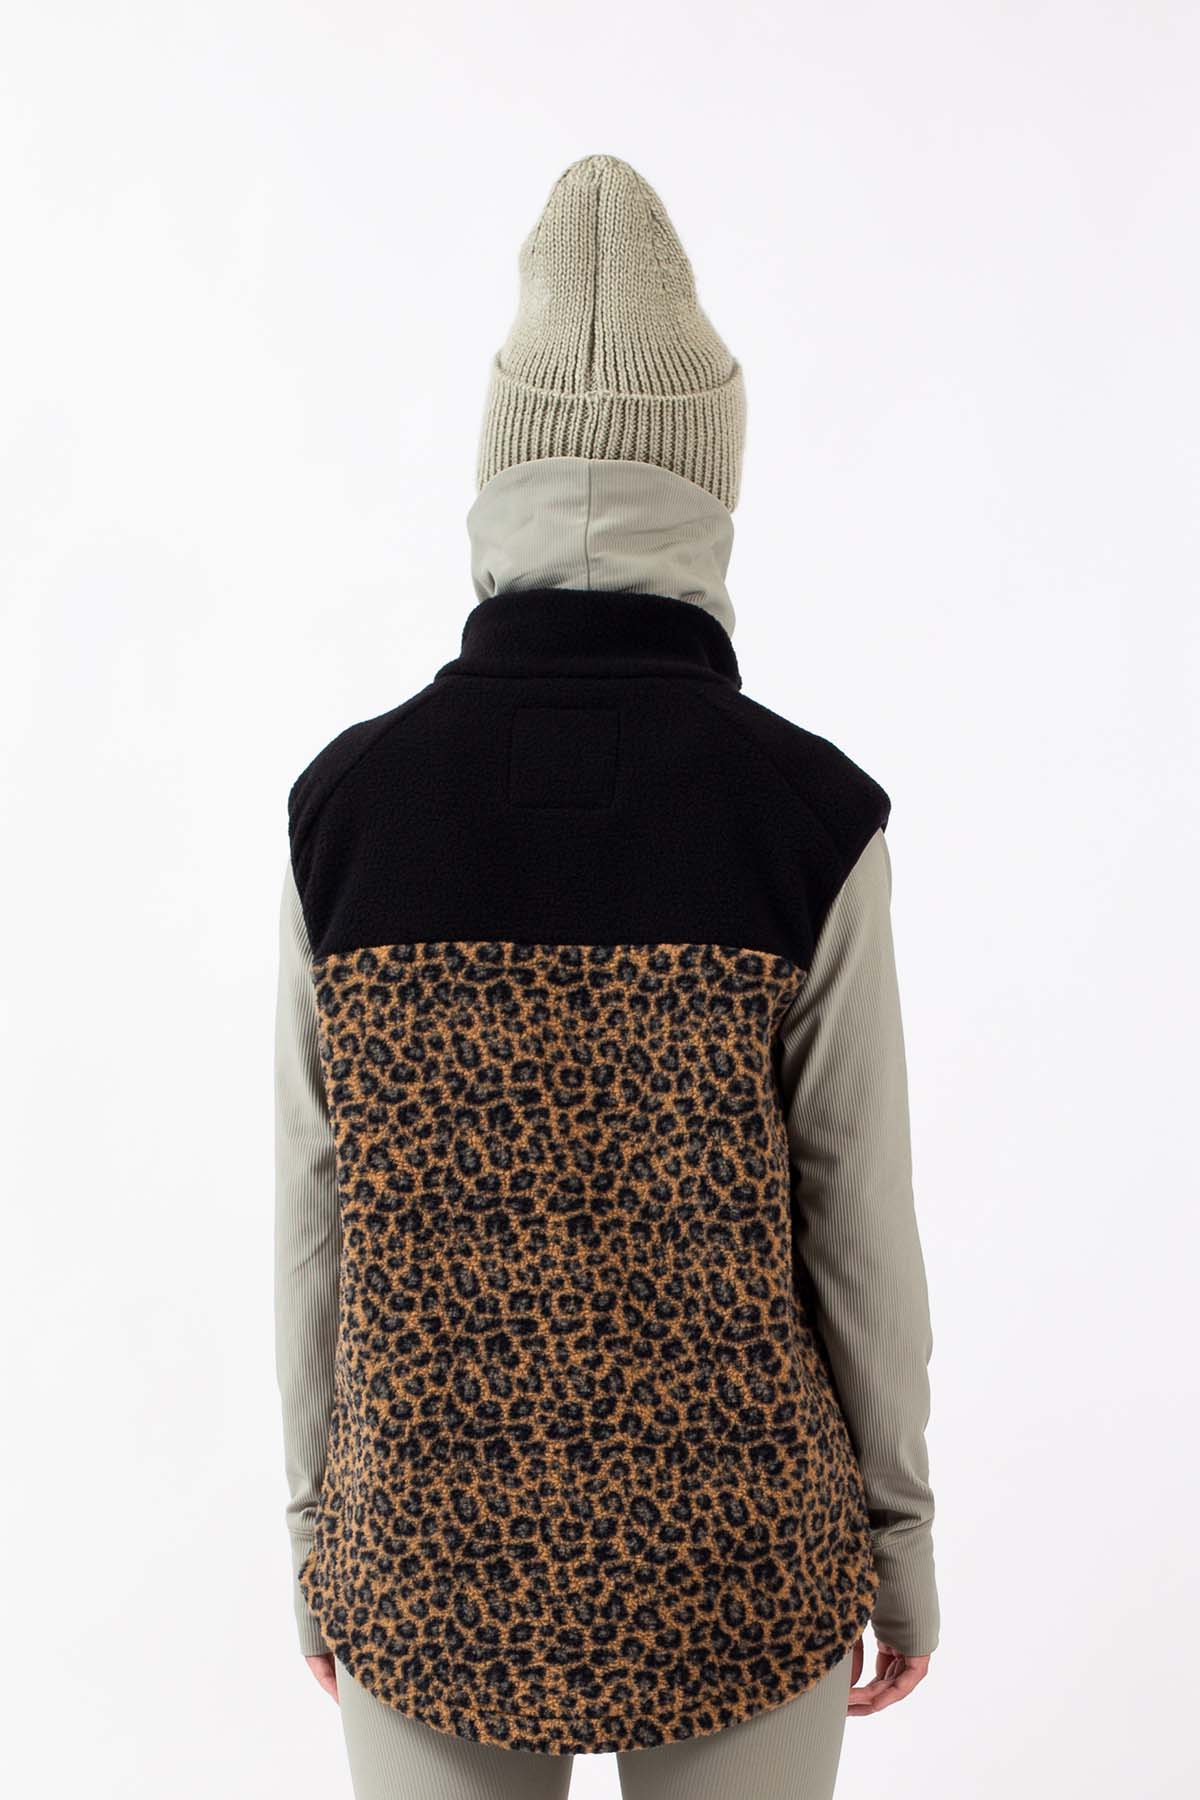 Lumberjackie Sherpa Vest - Leopard